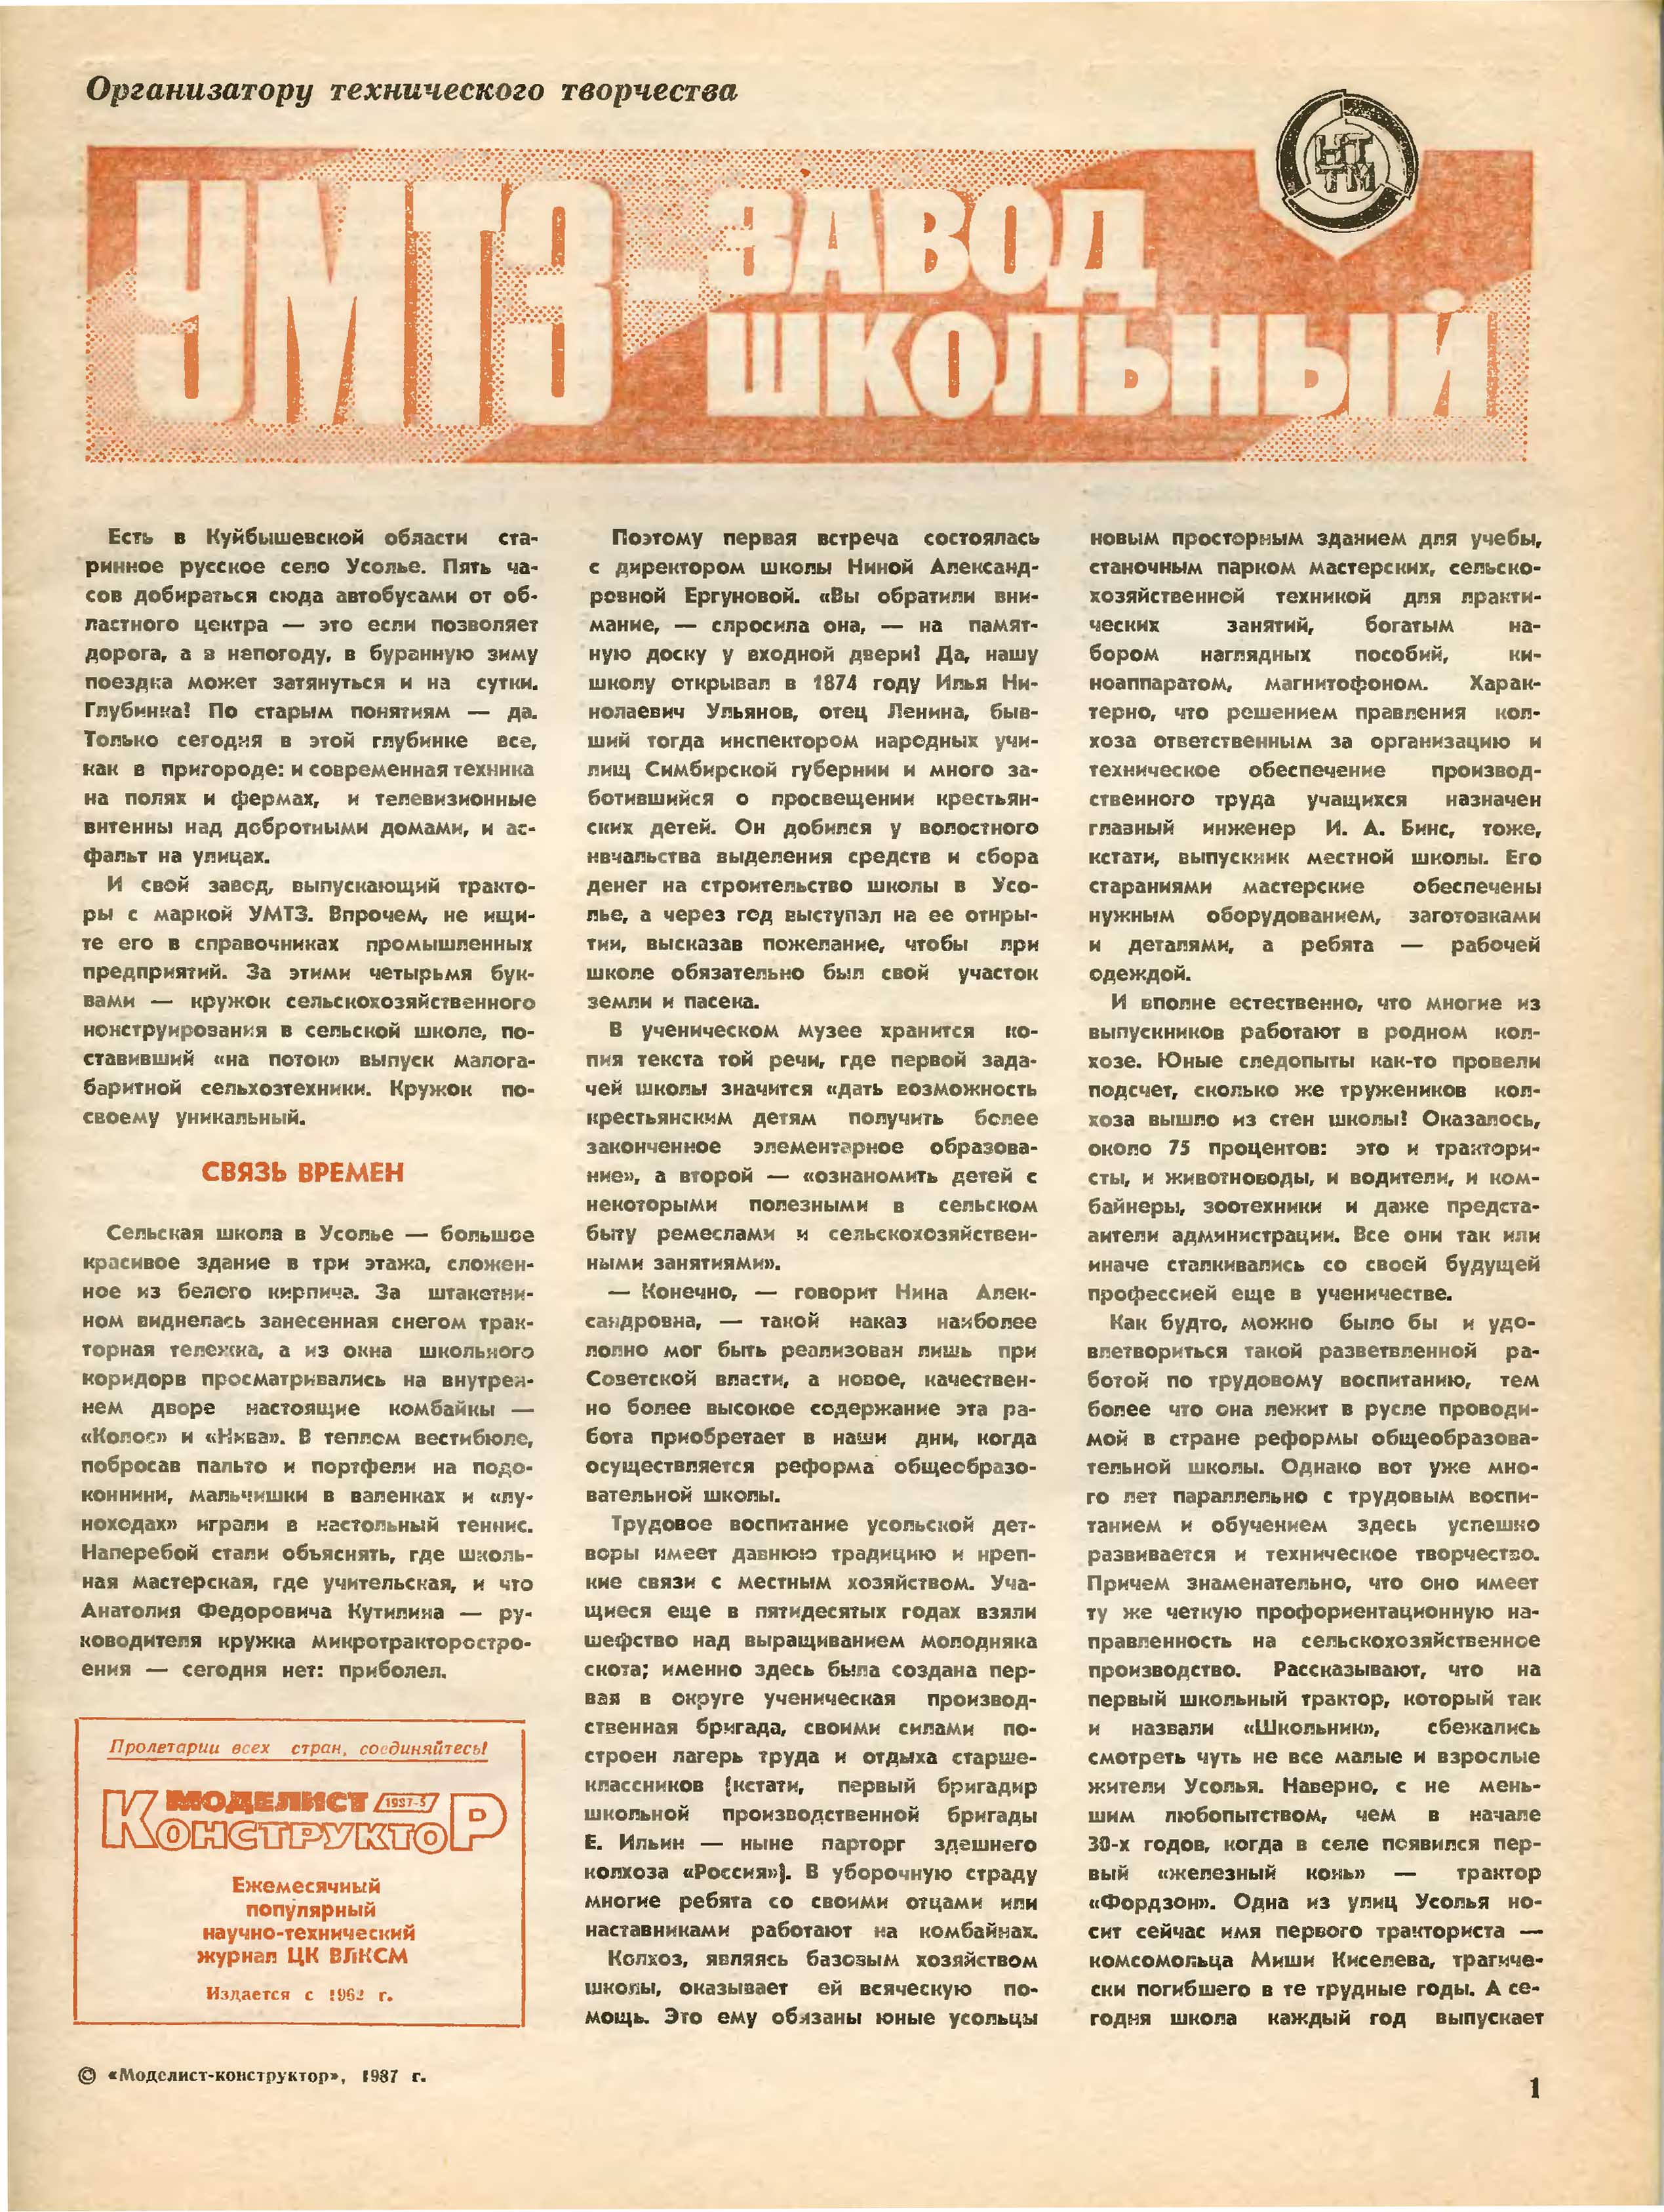 МК 5, 1987, 1 c.